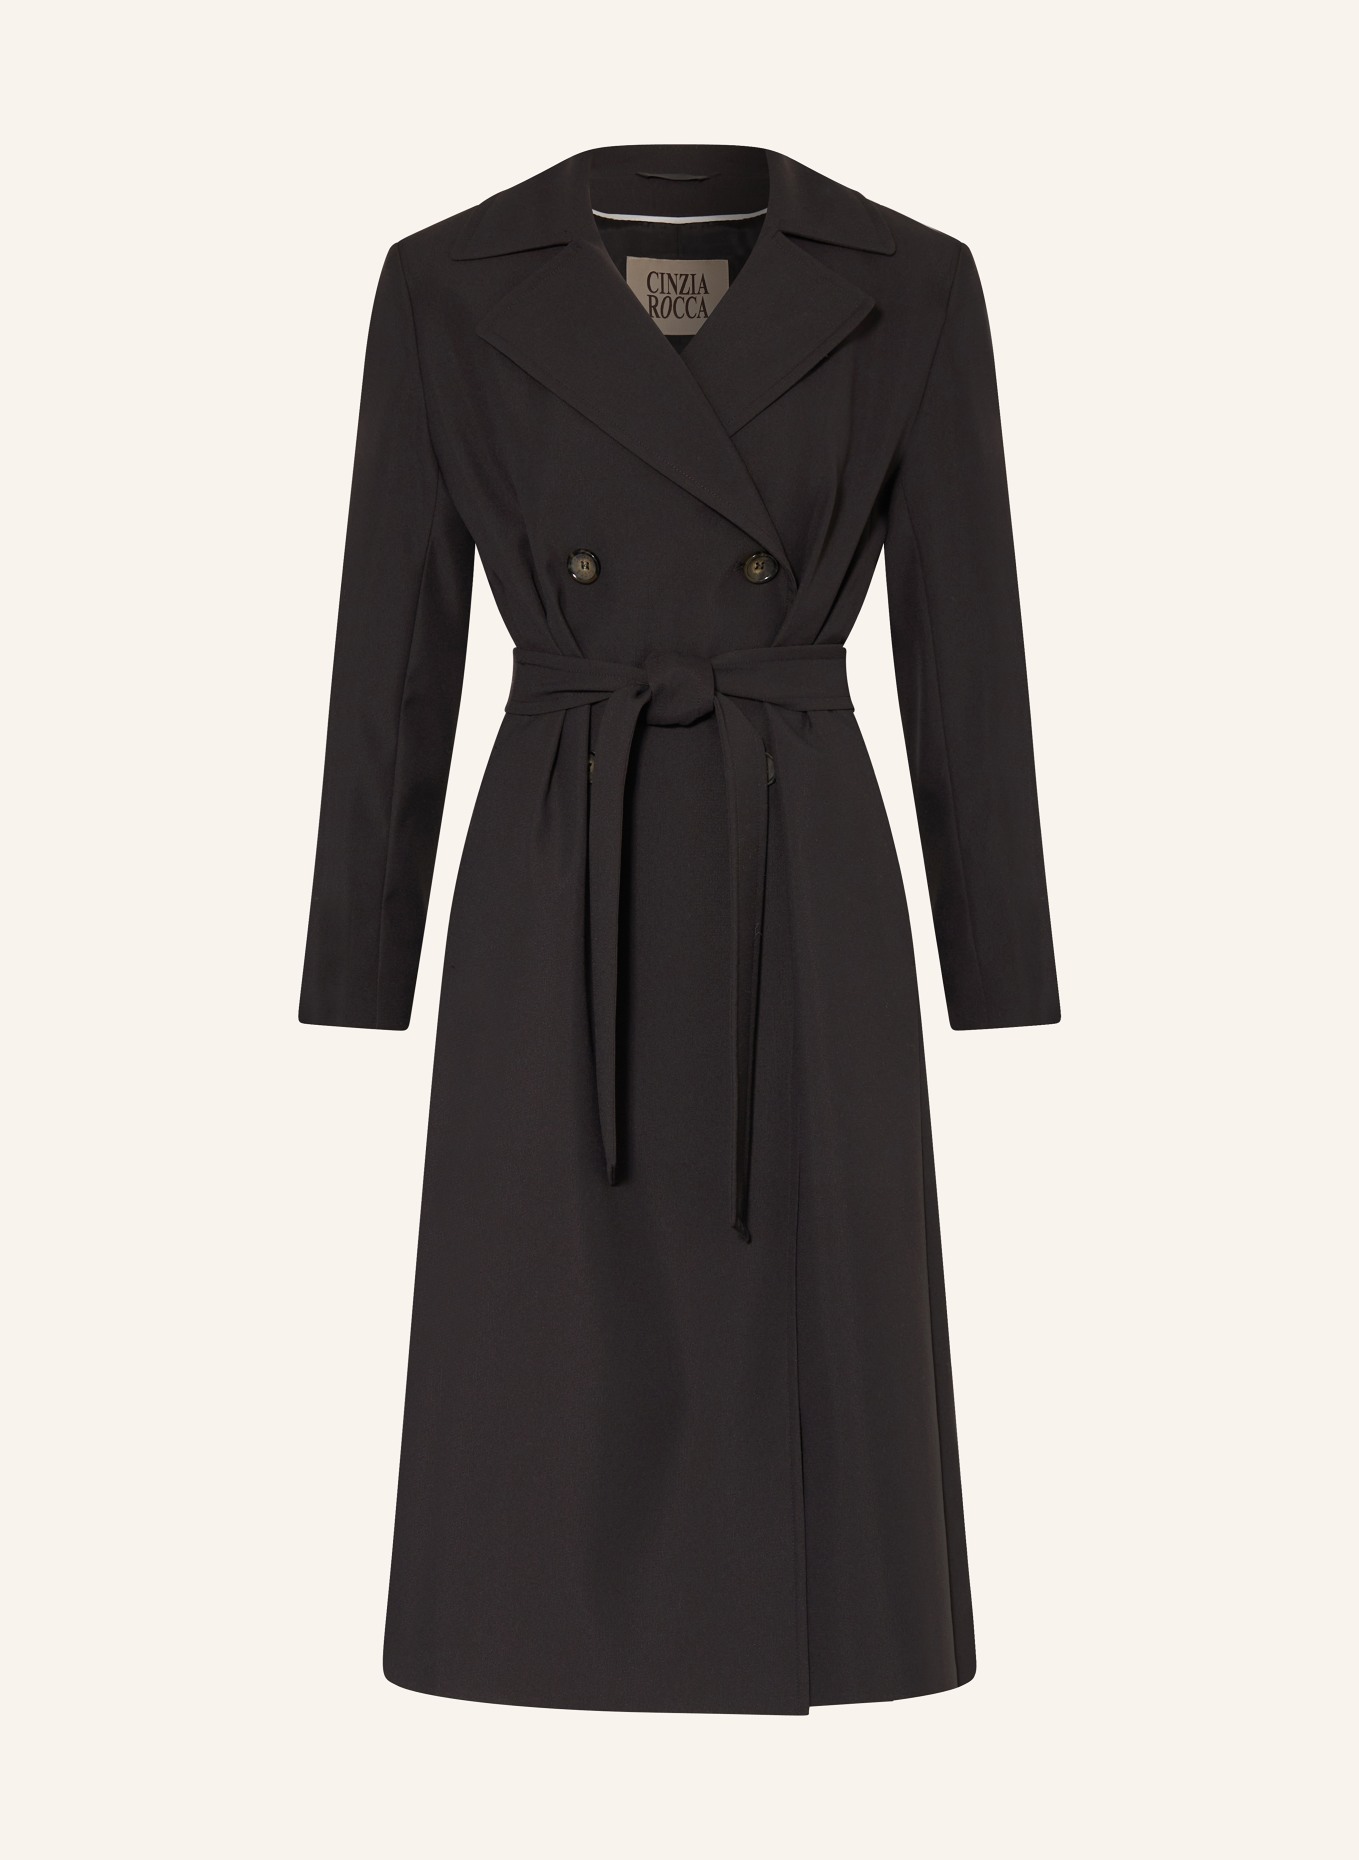 CINZIA ROCCA Trench coat, Color: BLACK (Image 1)